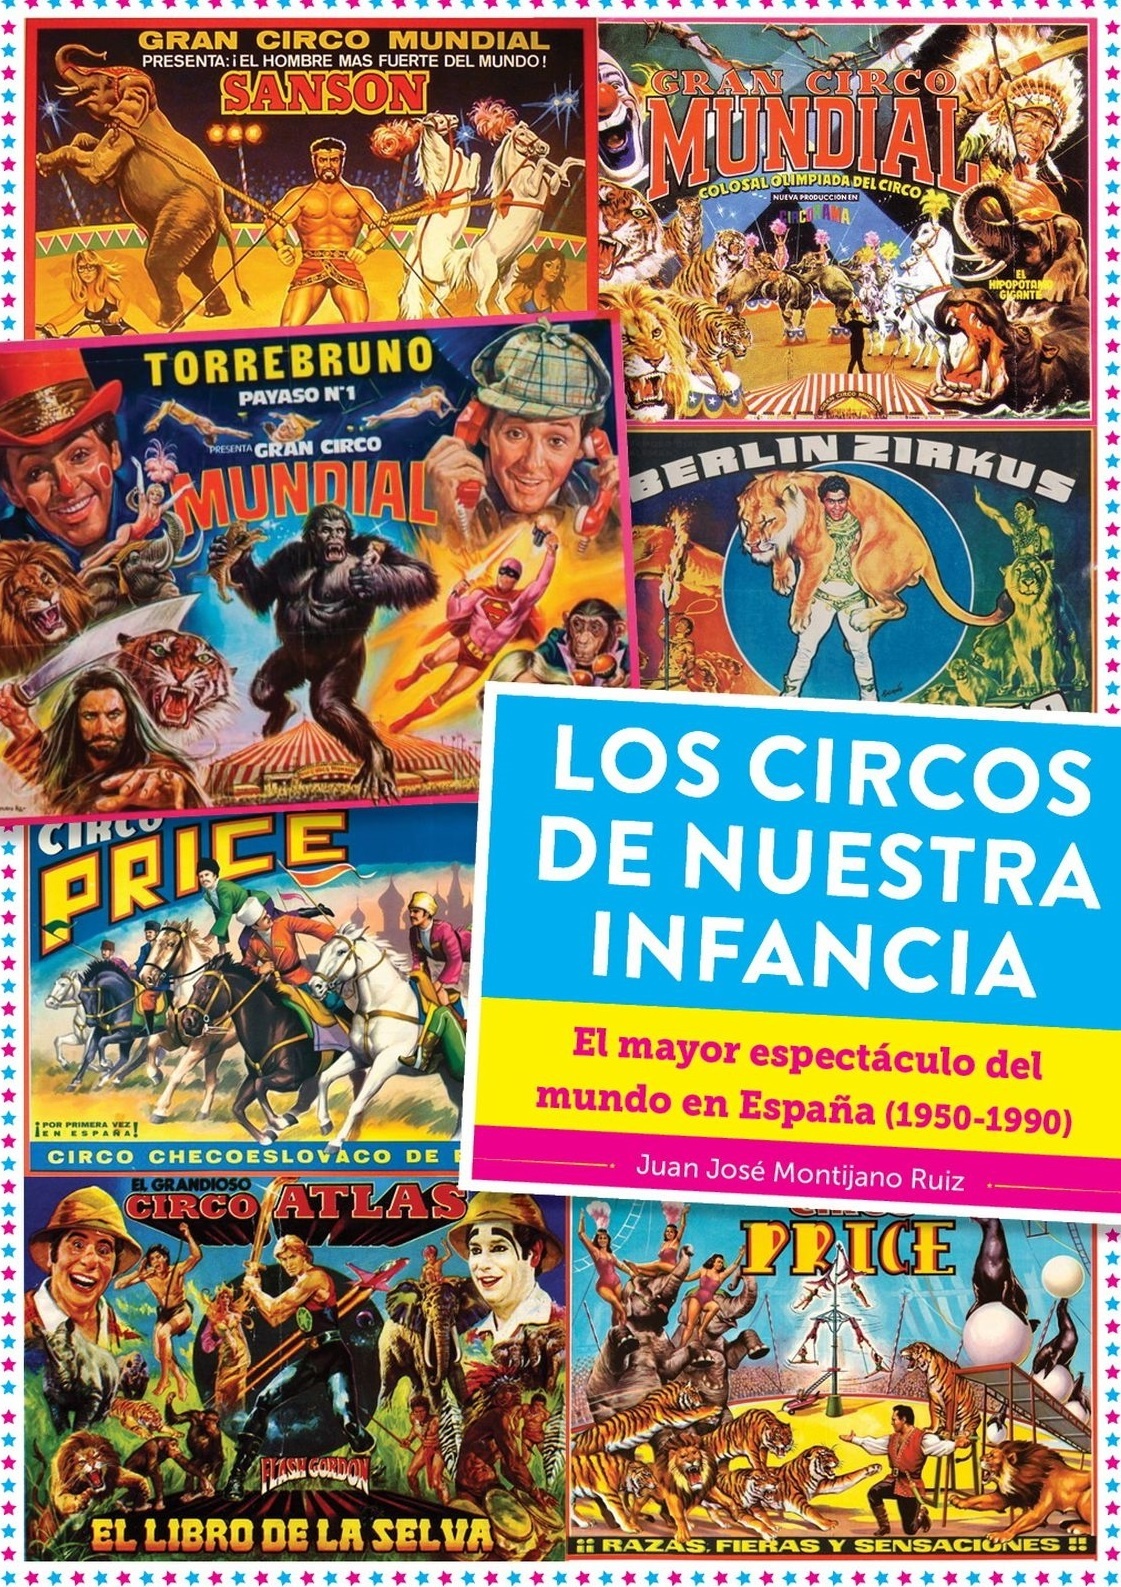 Circos de nuestra infancia, Los "El mayor espectáculo del mundo en España (1950-1990)"